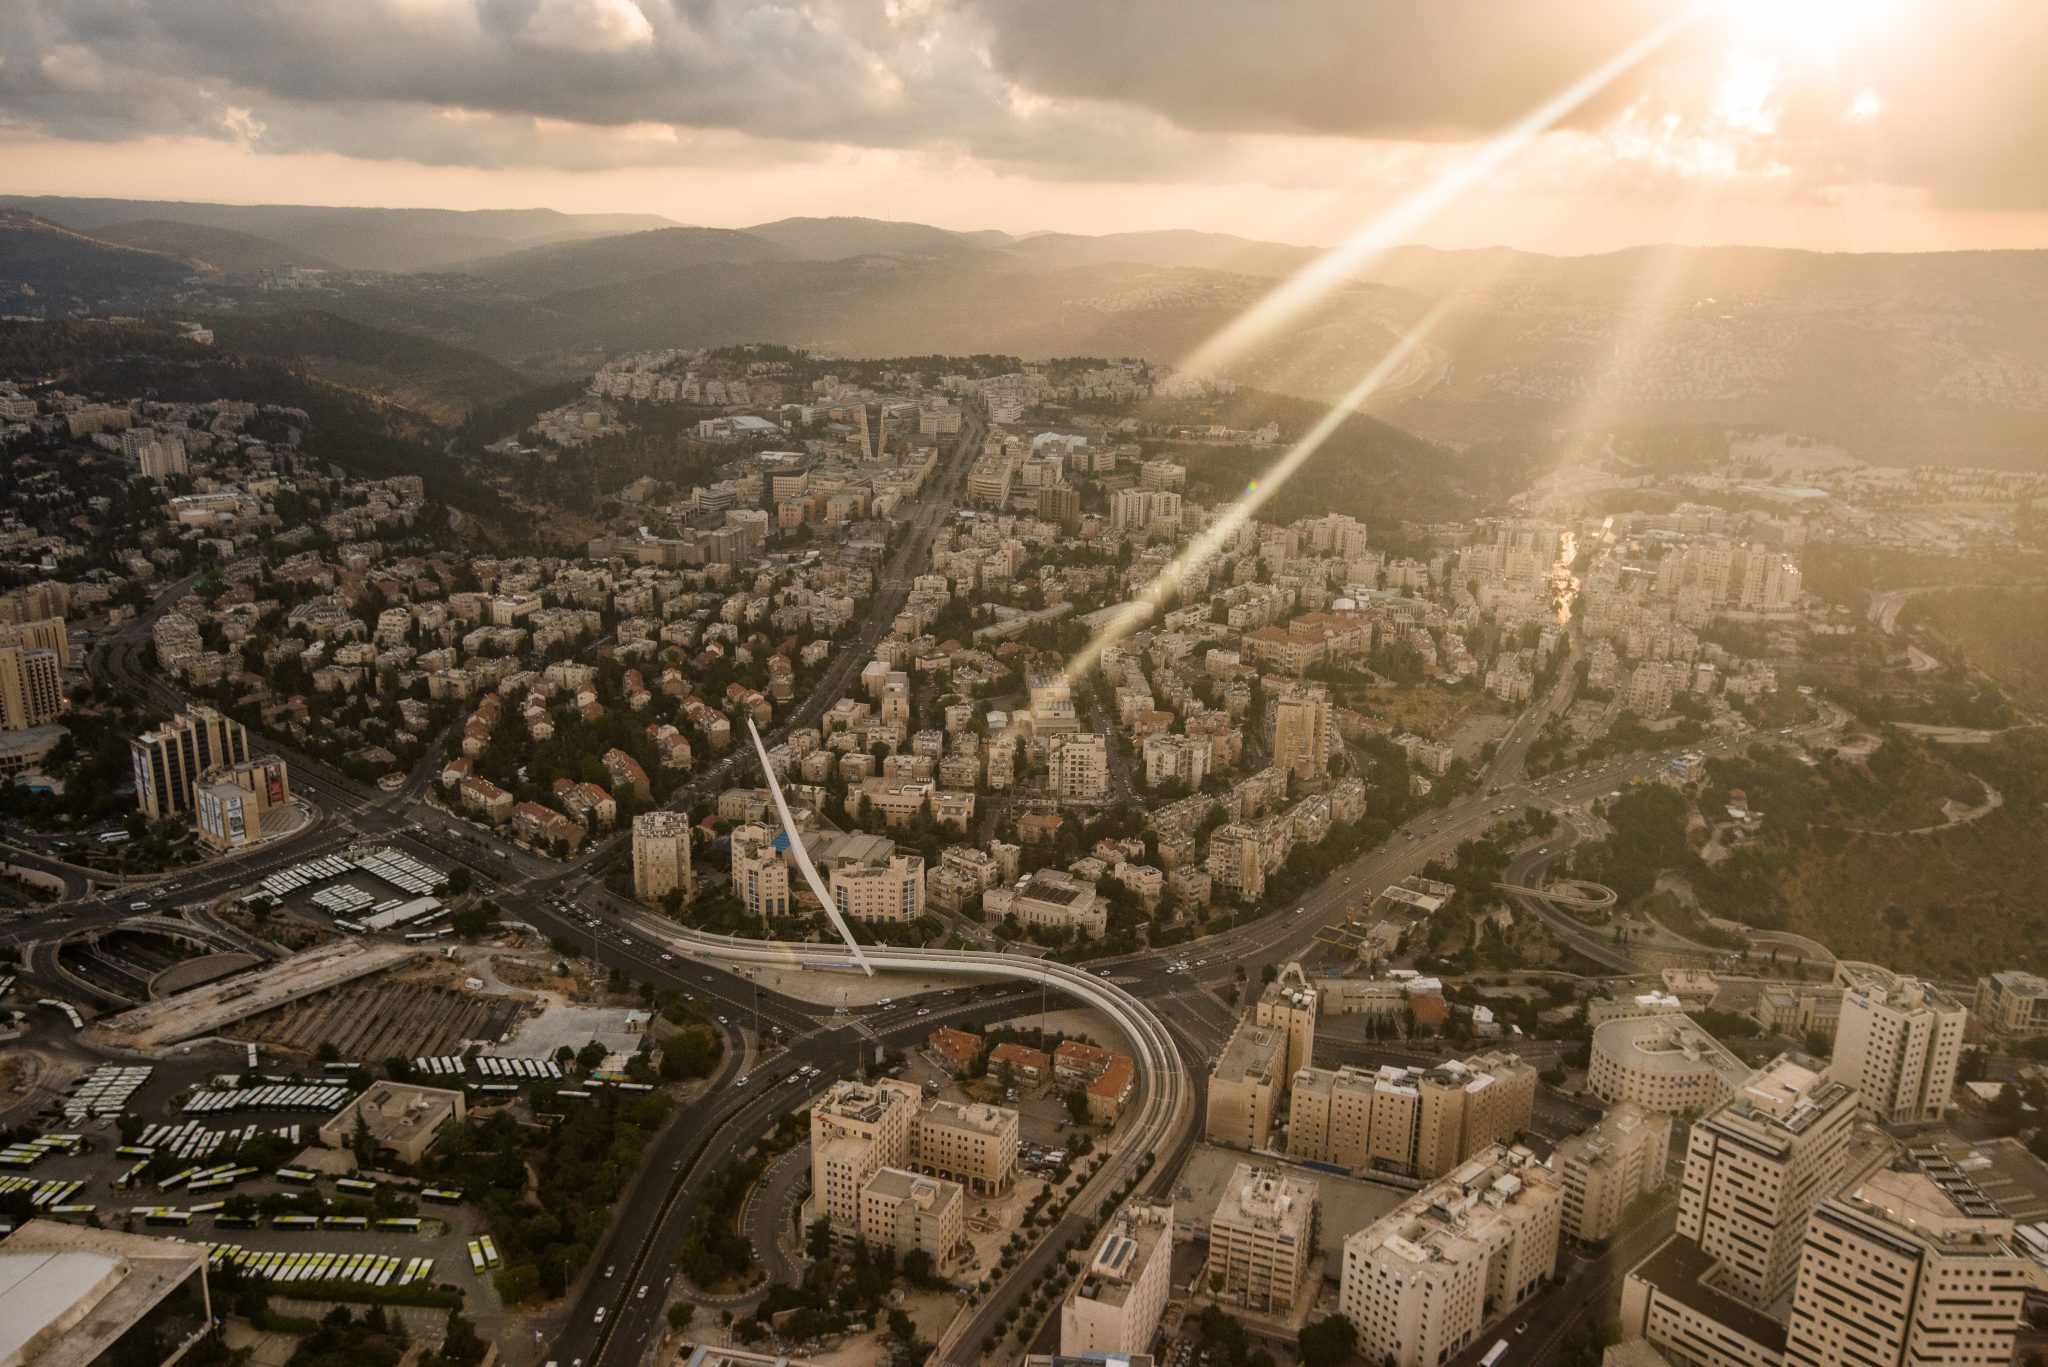 Birds Eye view of Jerusalem